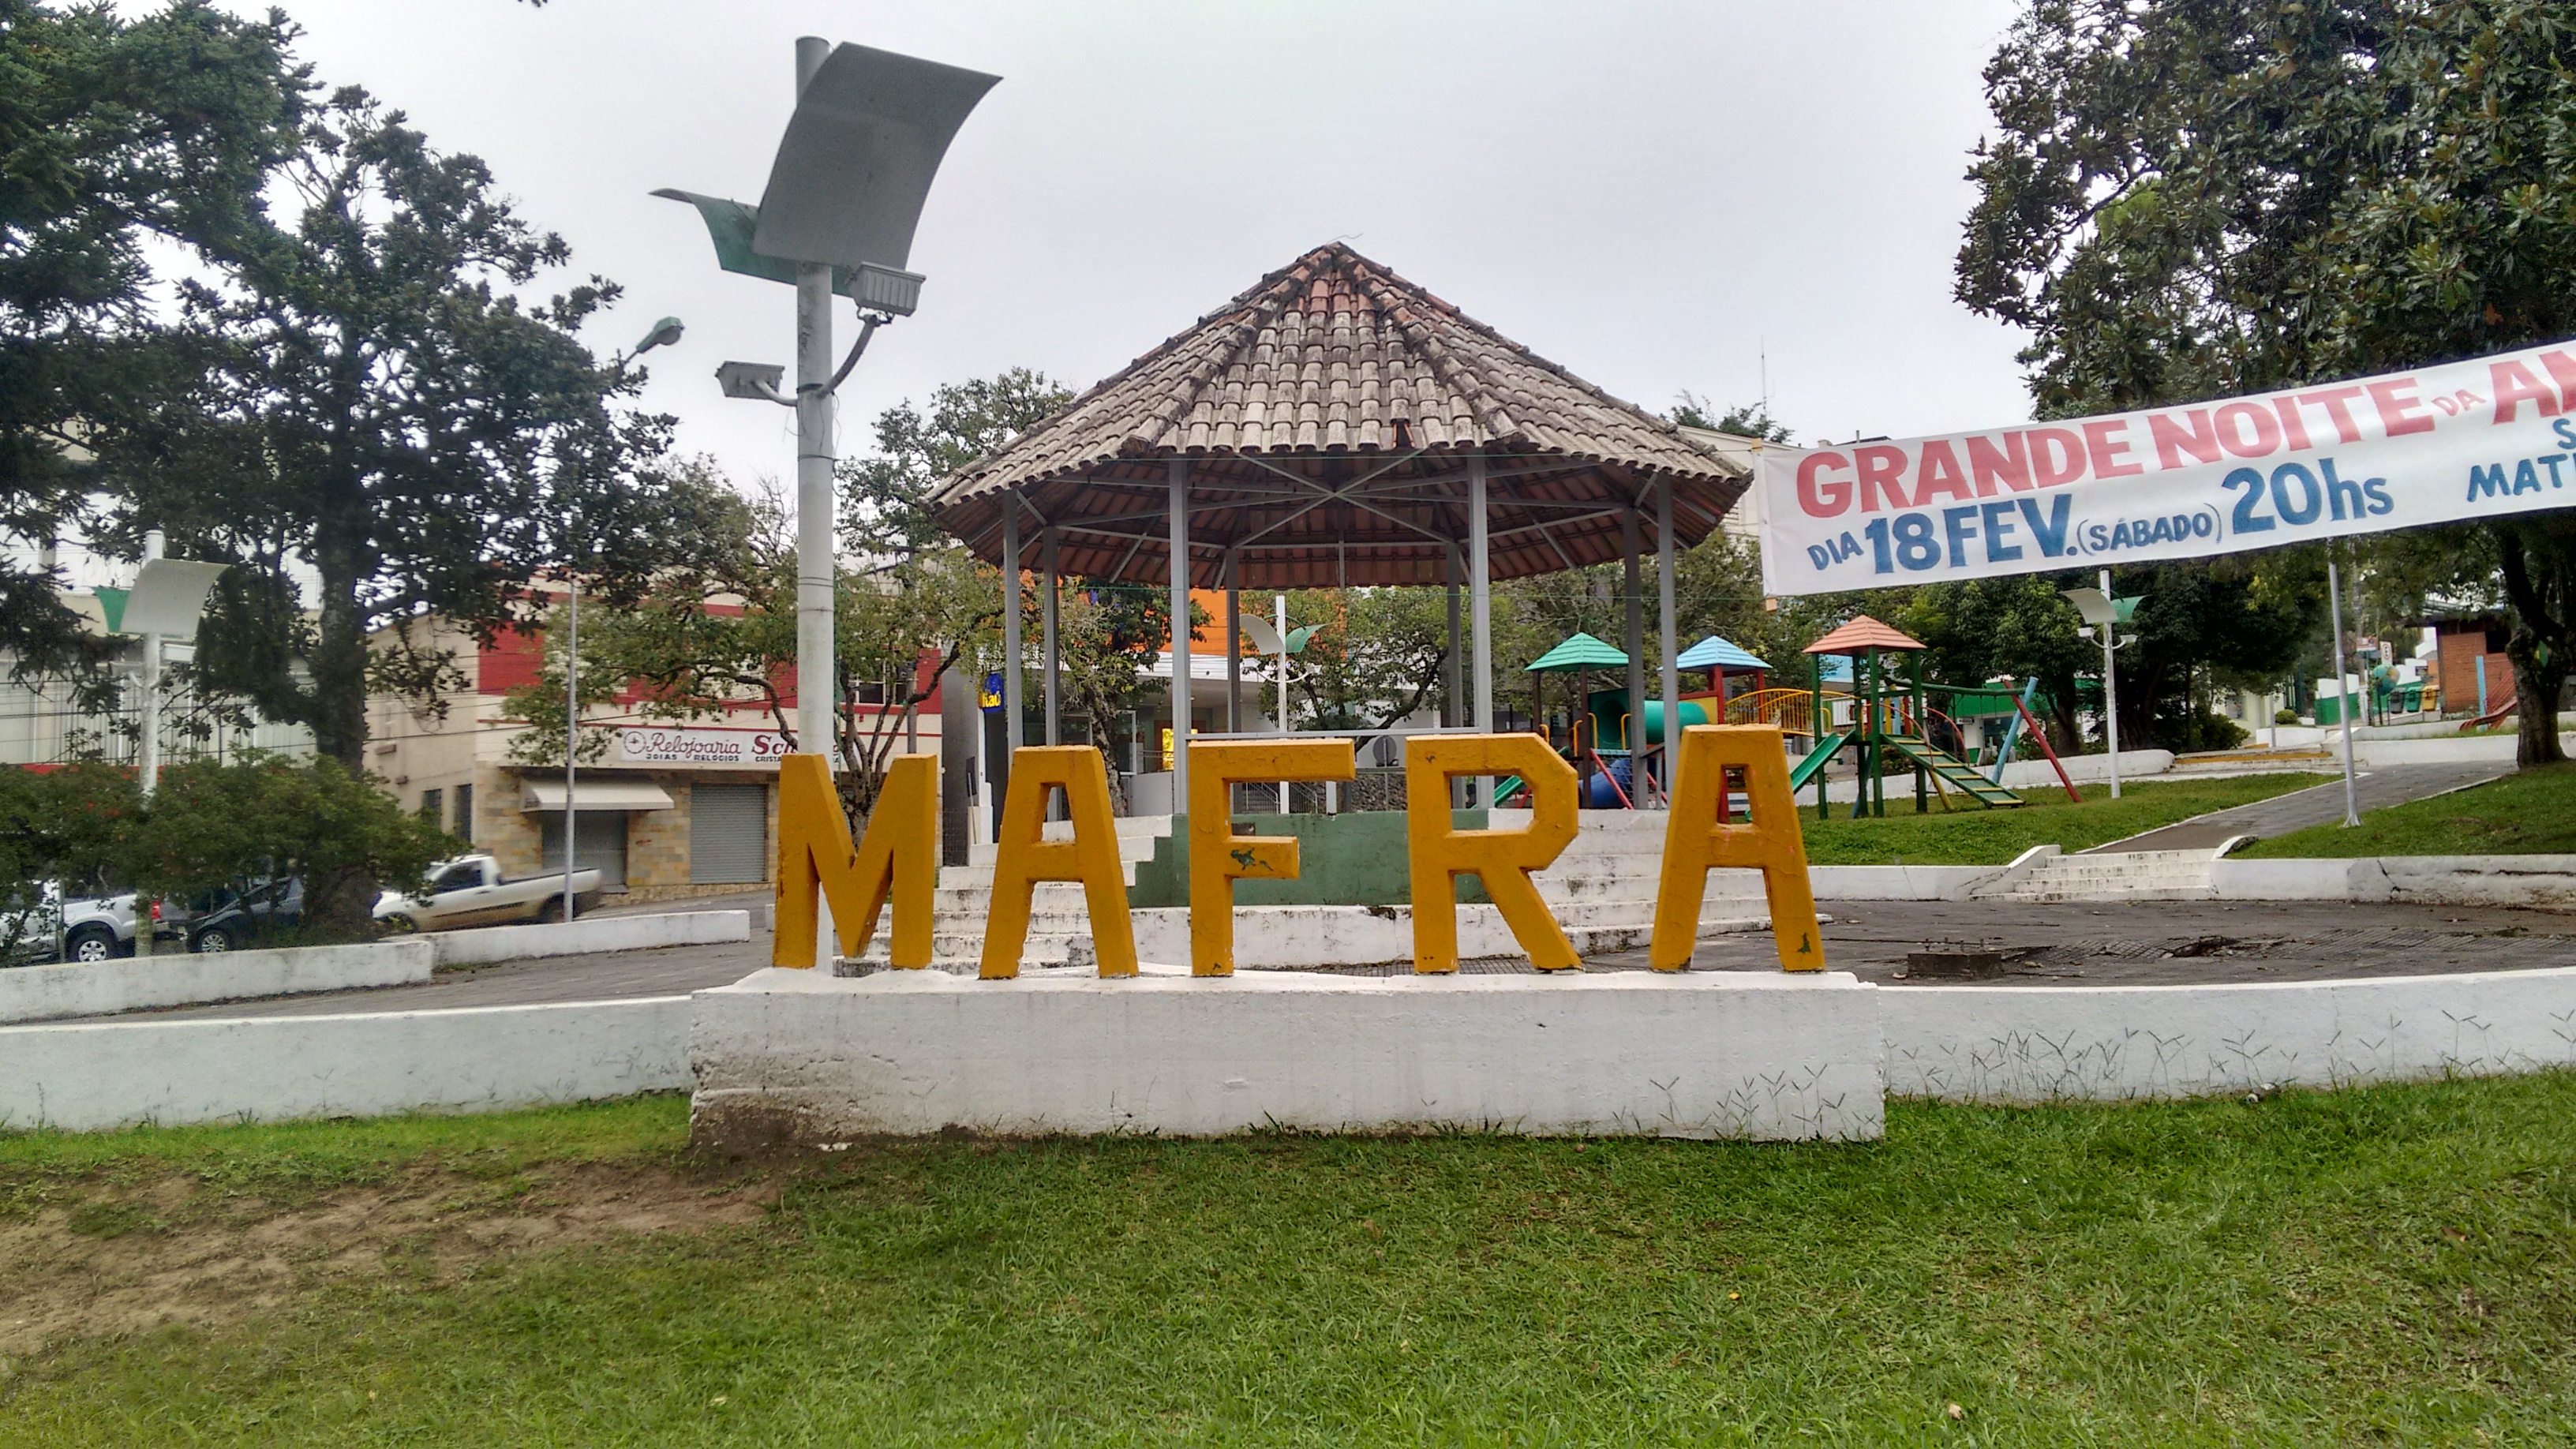 Mafra Santa Catarina